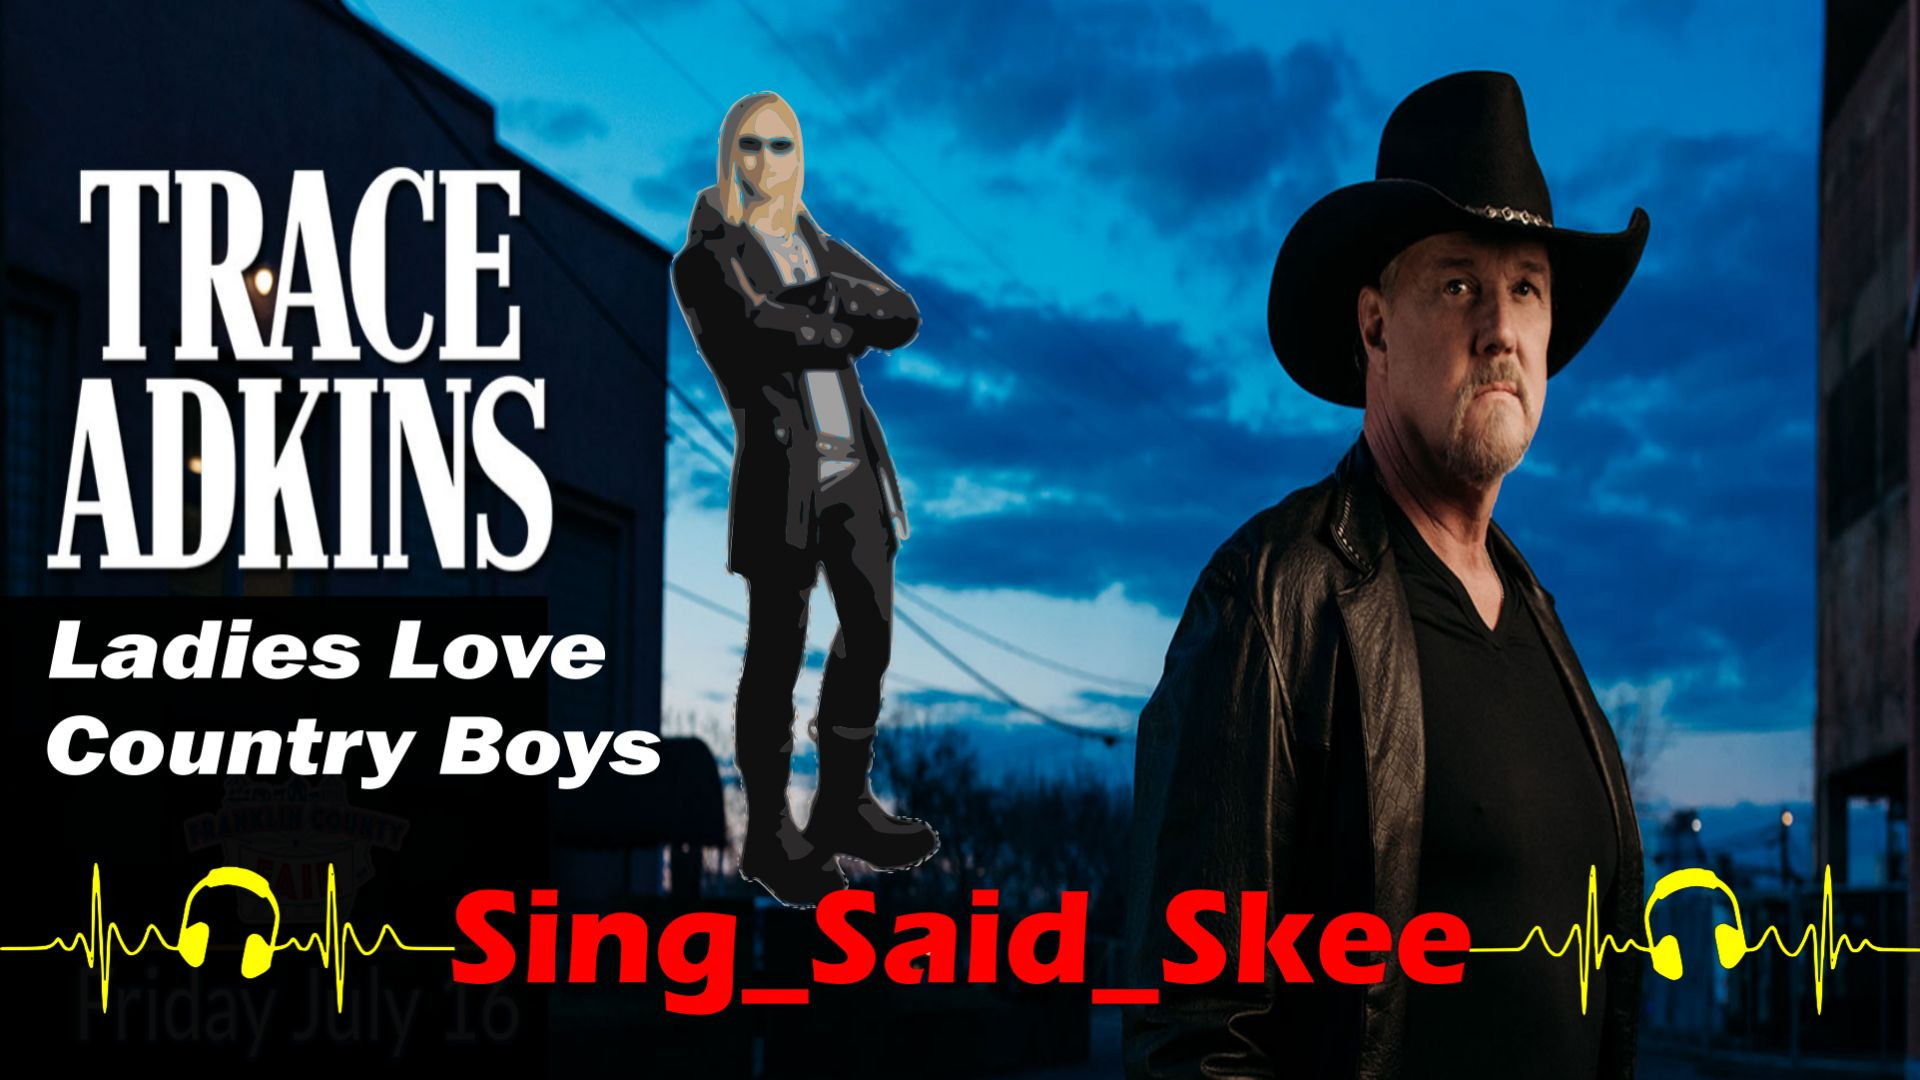 Ladies Love Country Boys - Trace Adkins - Sing_Said_Skee